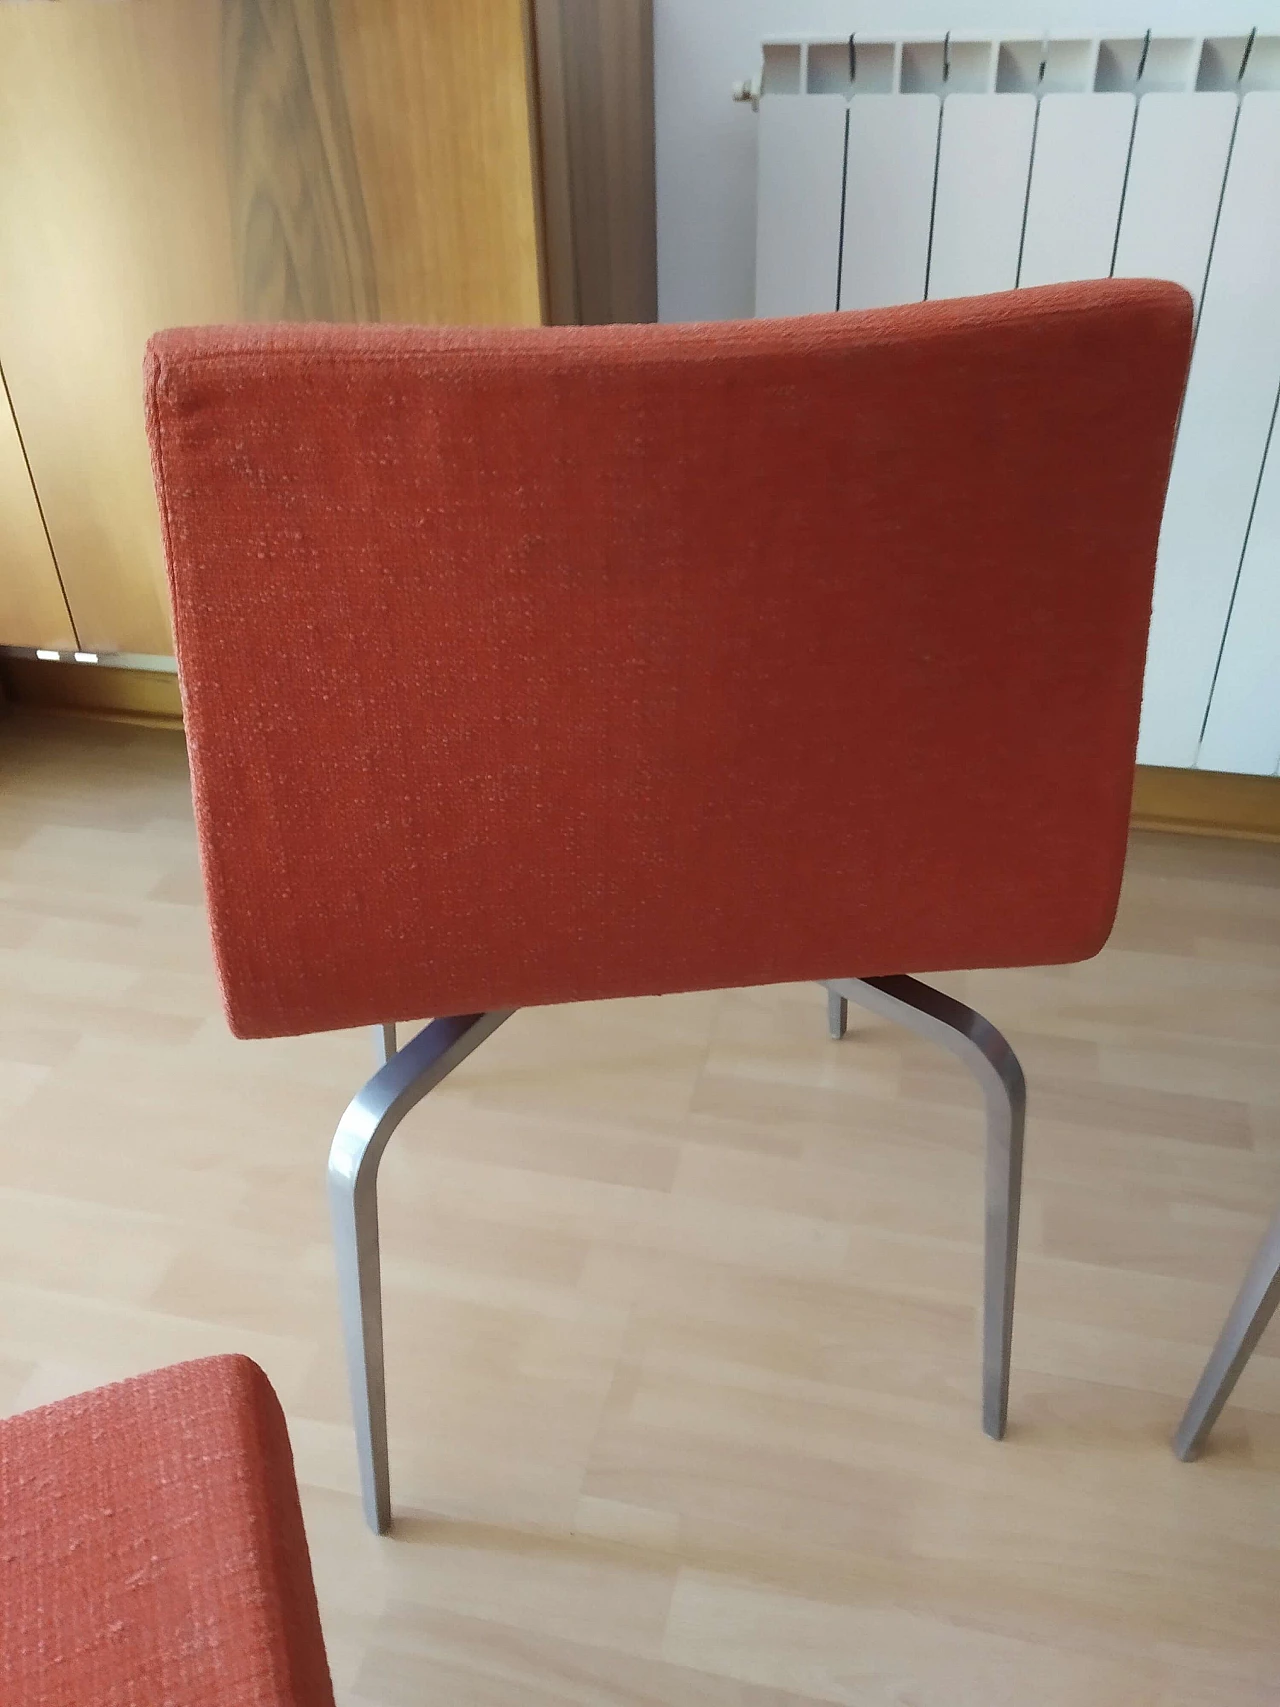 4 Hella Chairs by Mauro Lipparini for MisuraEmme 1477246